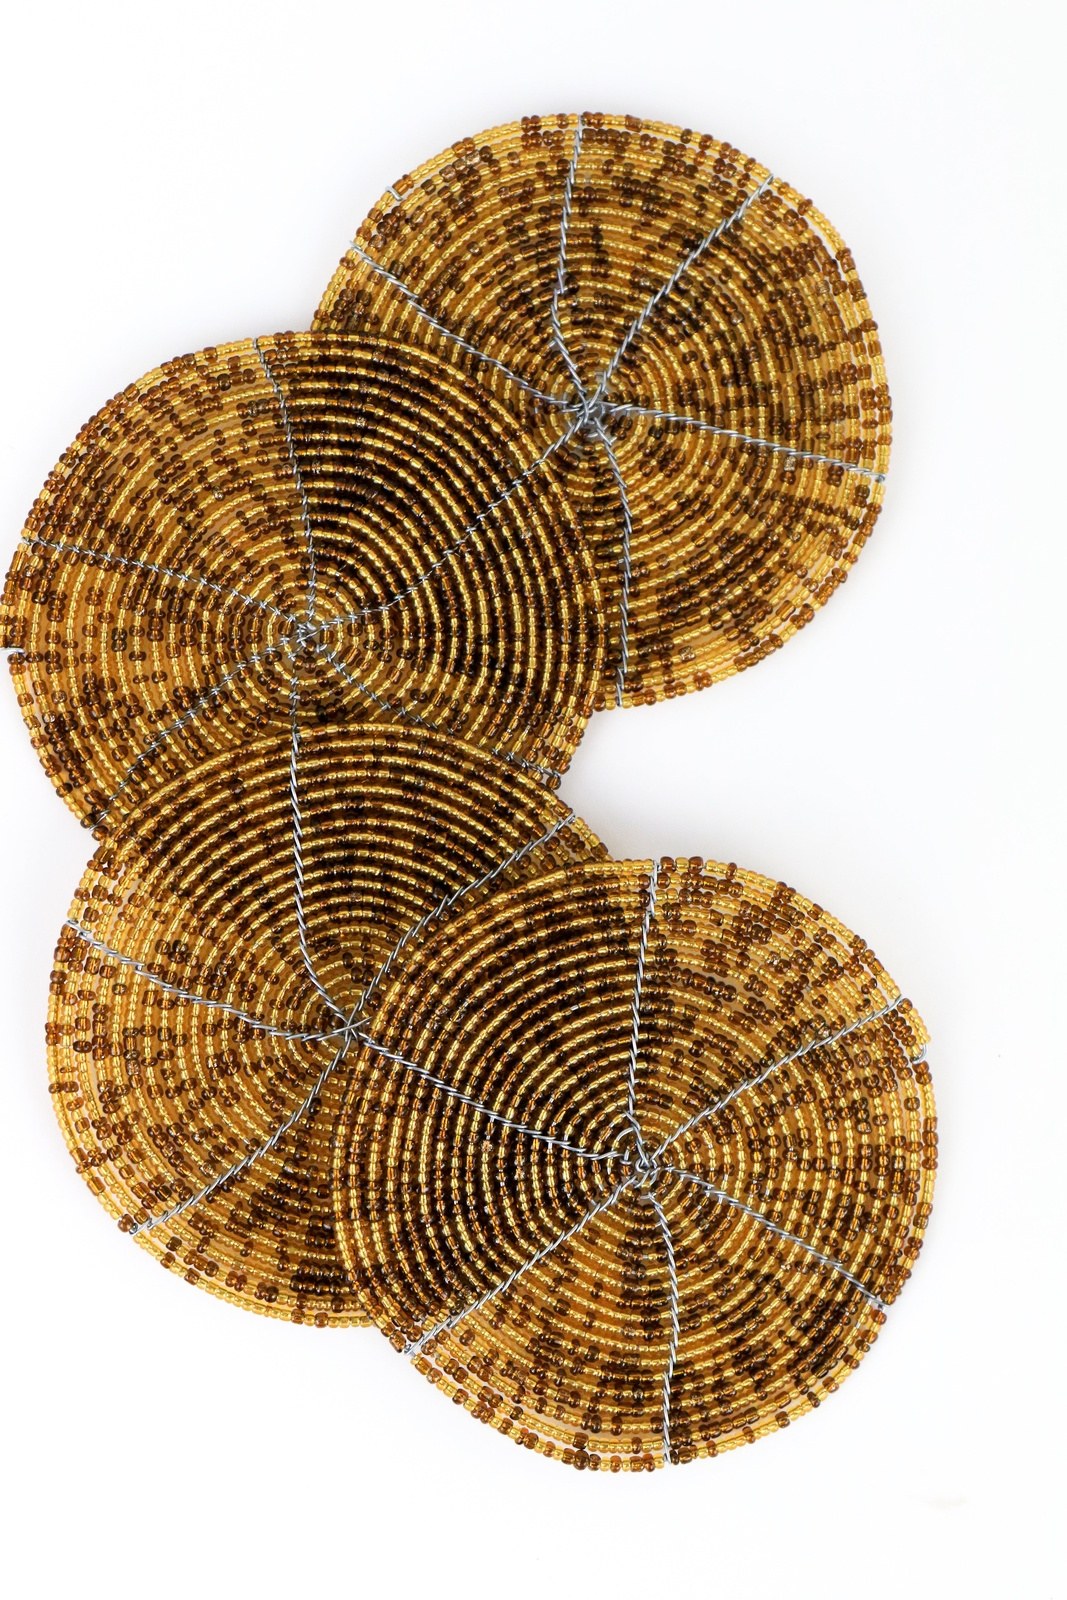 Beaded Coasters Set of 4 - Khutsala™ Artisans